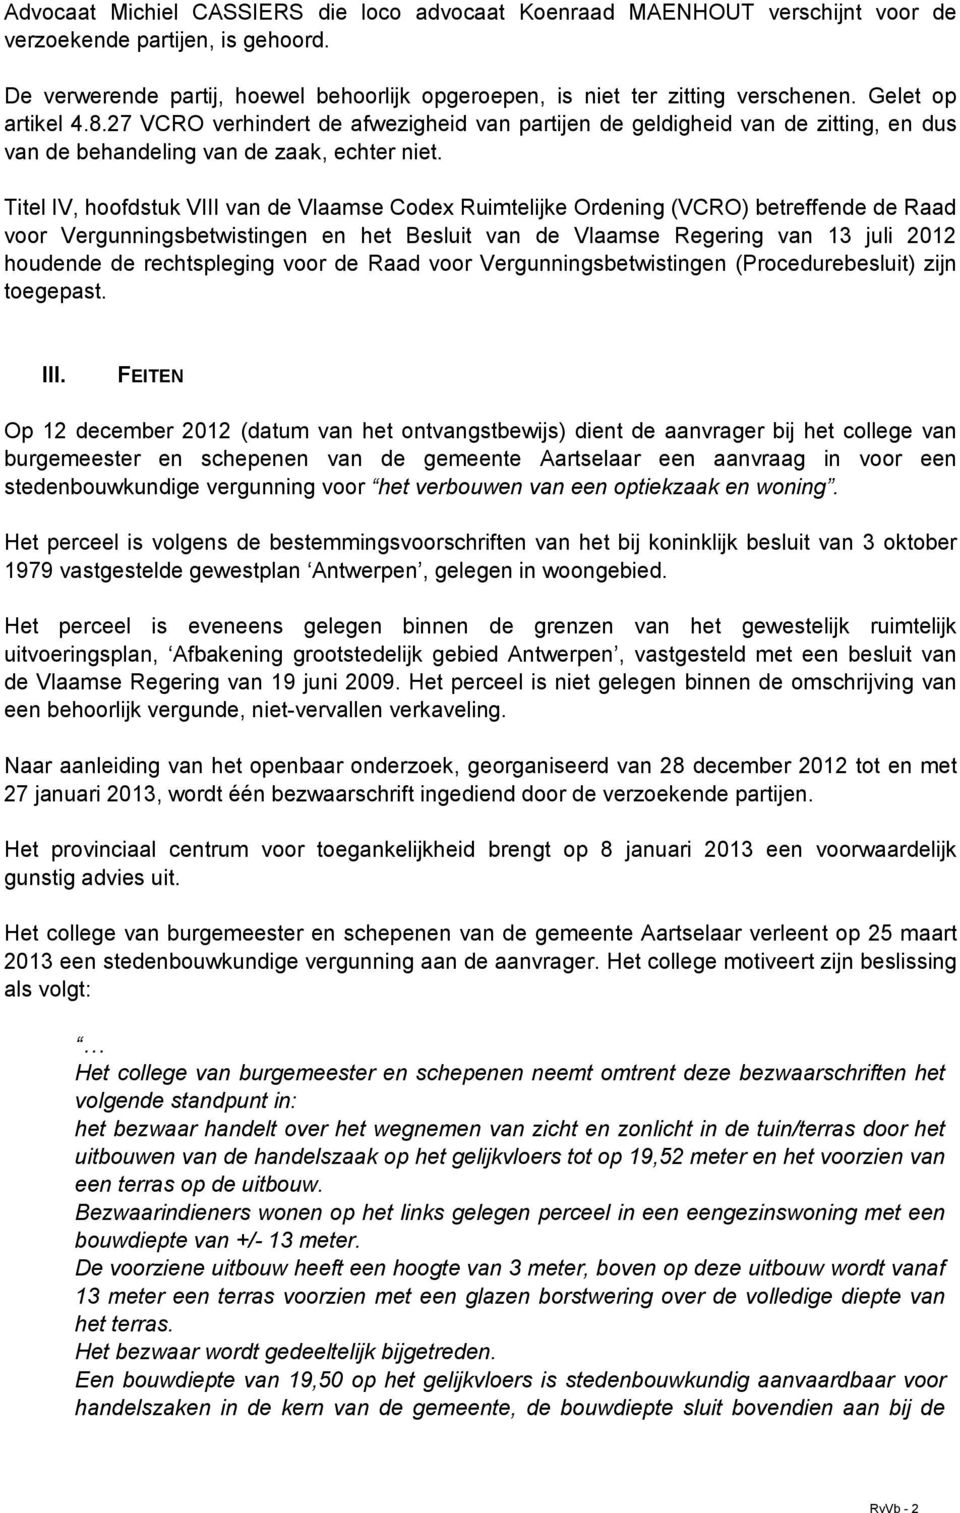 Titel IV, hoofdstuk VIII van de Vlaamse Codex Ruimtelijke Ordening (VCRO) betreffende de Raad voor Vergunningsbetwistingen en het Besluit van de Vlaamse Regering van 13 juli 2012 houdende de